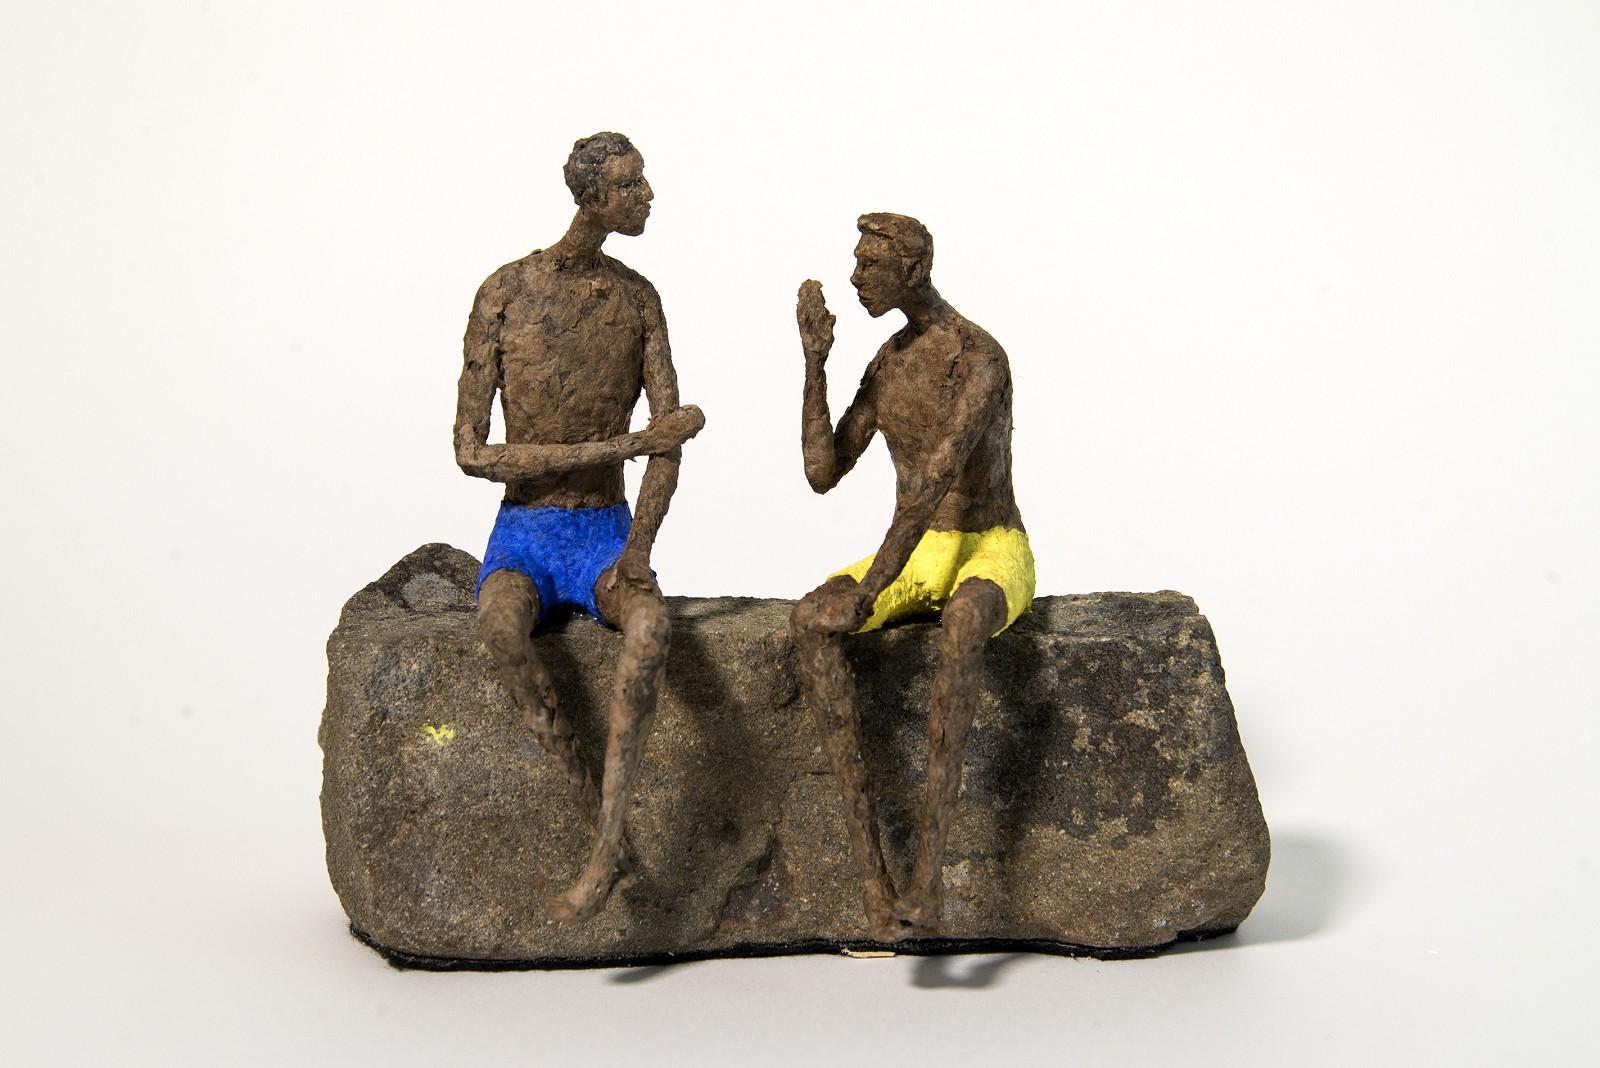 Figurative Sculpture Paul Duval - « The Short Story » - sculpture en papier mâché expressive et texturée représentant un homme figuratif